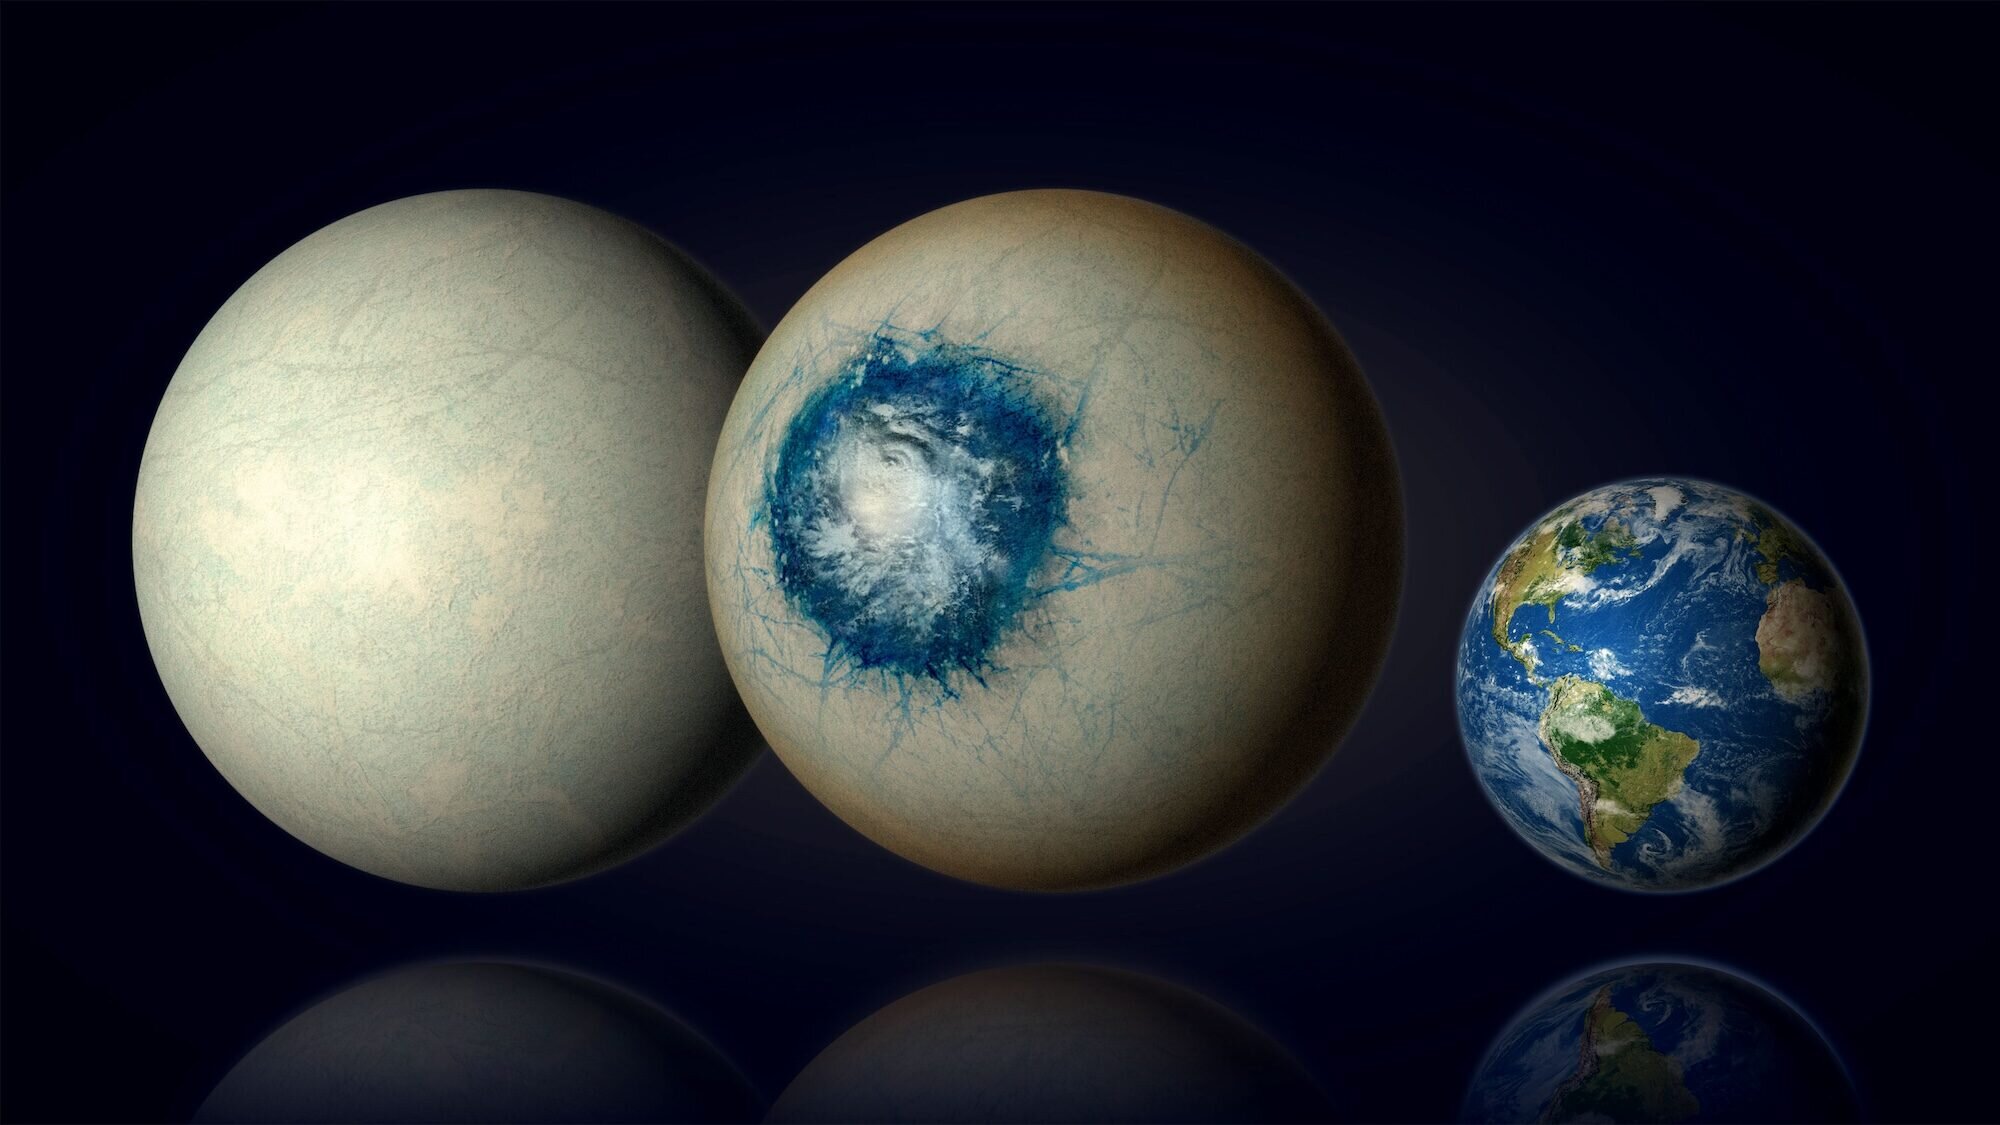 Egzoplanet LHS 1140 b može biti svijet potpuno prekriven ledom, slično Jupiterovom mjesecu Europi, ili ledeni svijet s tekućim oceanom ispod površine i oblacima u atmosferi. LHS 1140 b je 1,7 puta veći od Zemlje i najperspektivniji je egzoplanet u zoni nastanjivosti u potrazi za tekućom vodom izvan Sunčevog sustava. Zasluge: B. Gougeon/Sveučilište u Montrealu.